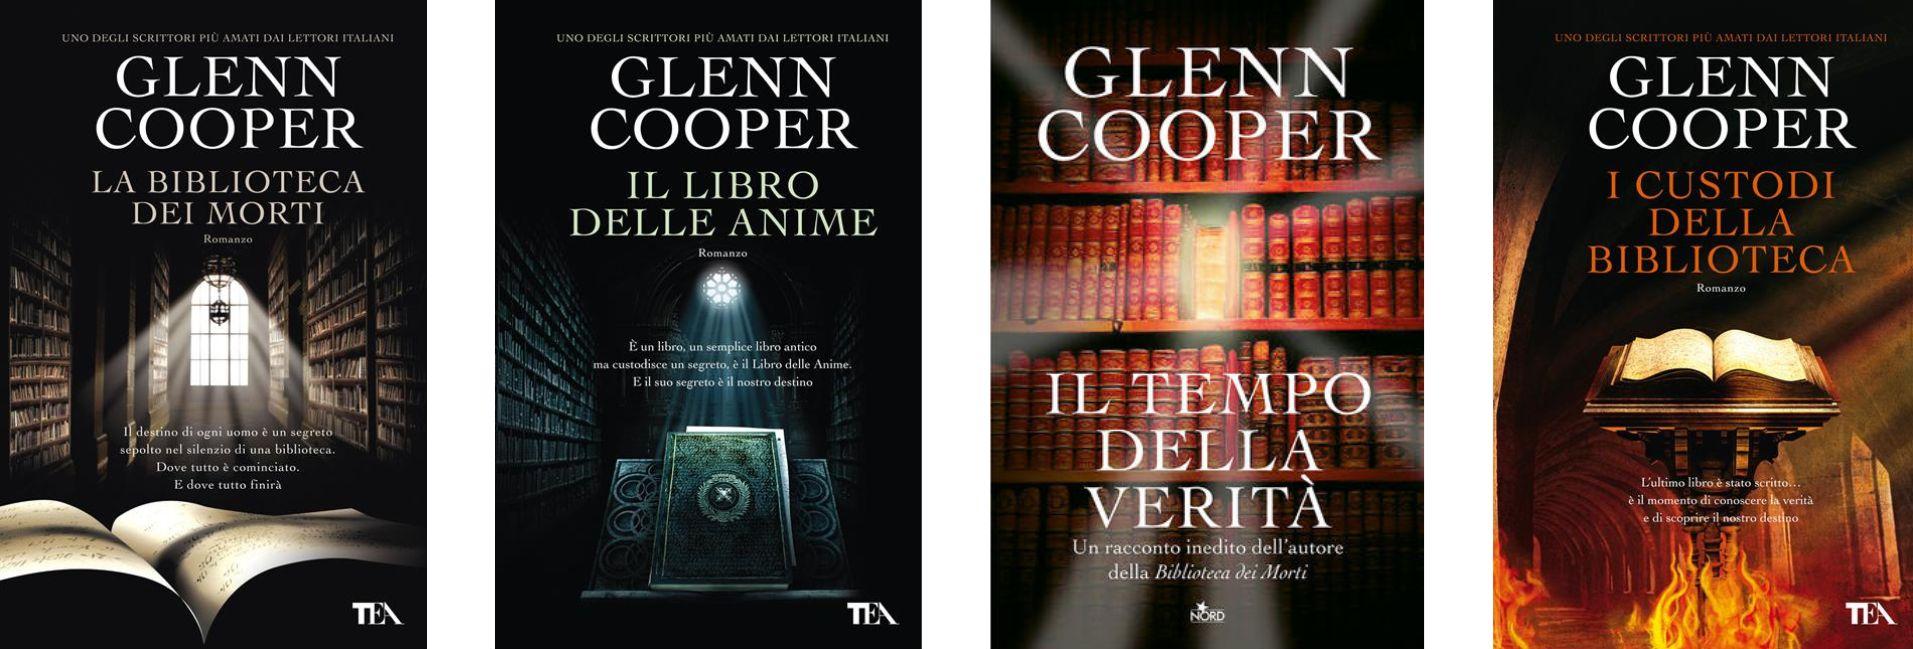 Storia, avventura e mistero: alla scoperta dei libri di Glenn